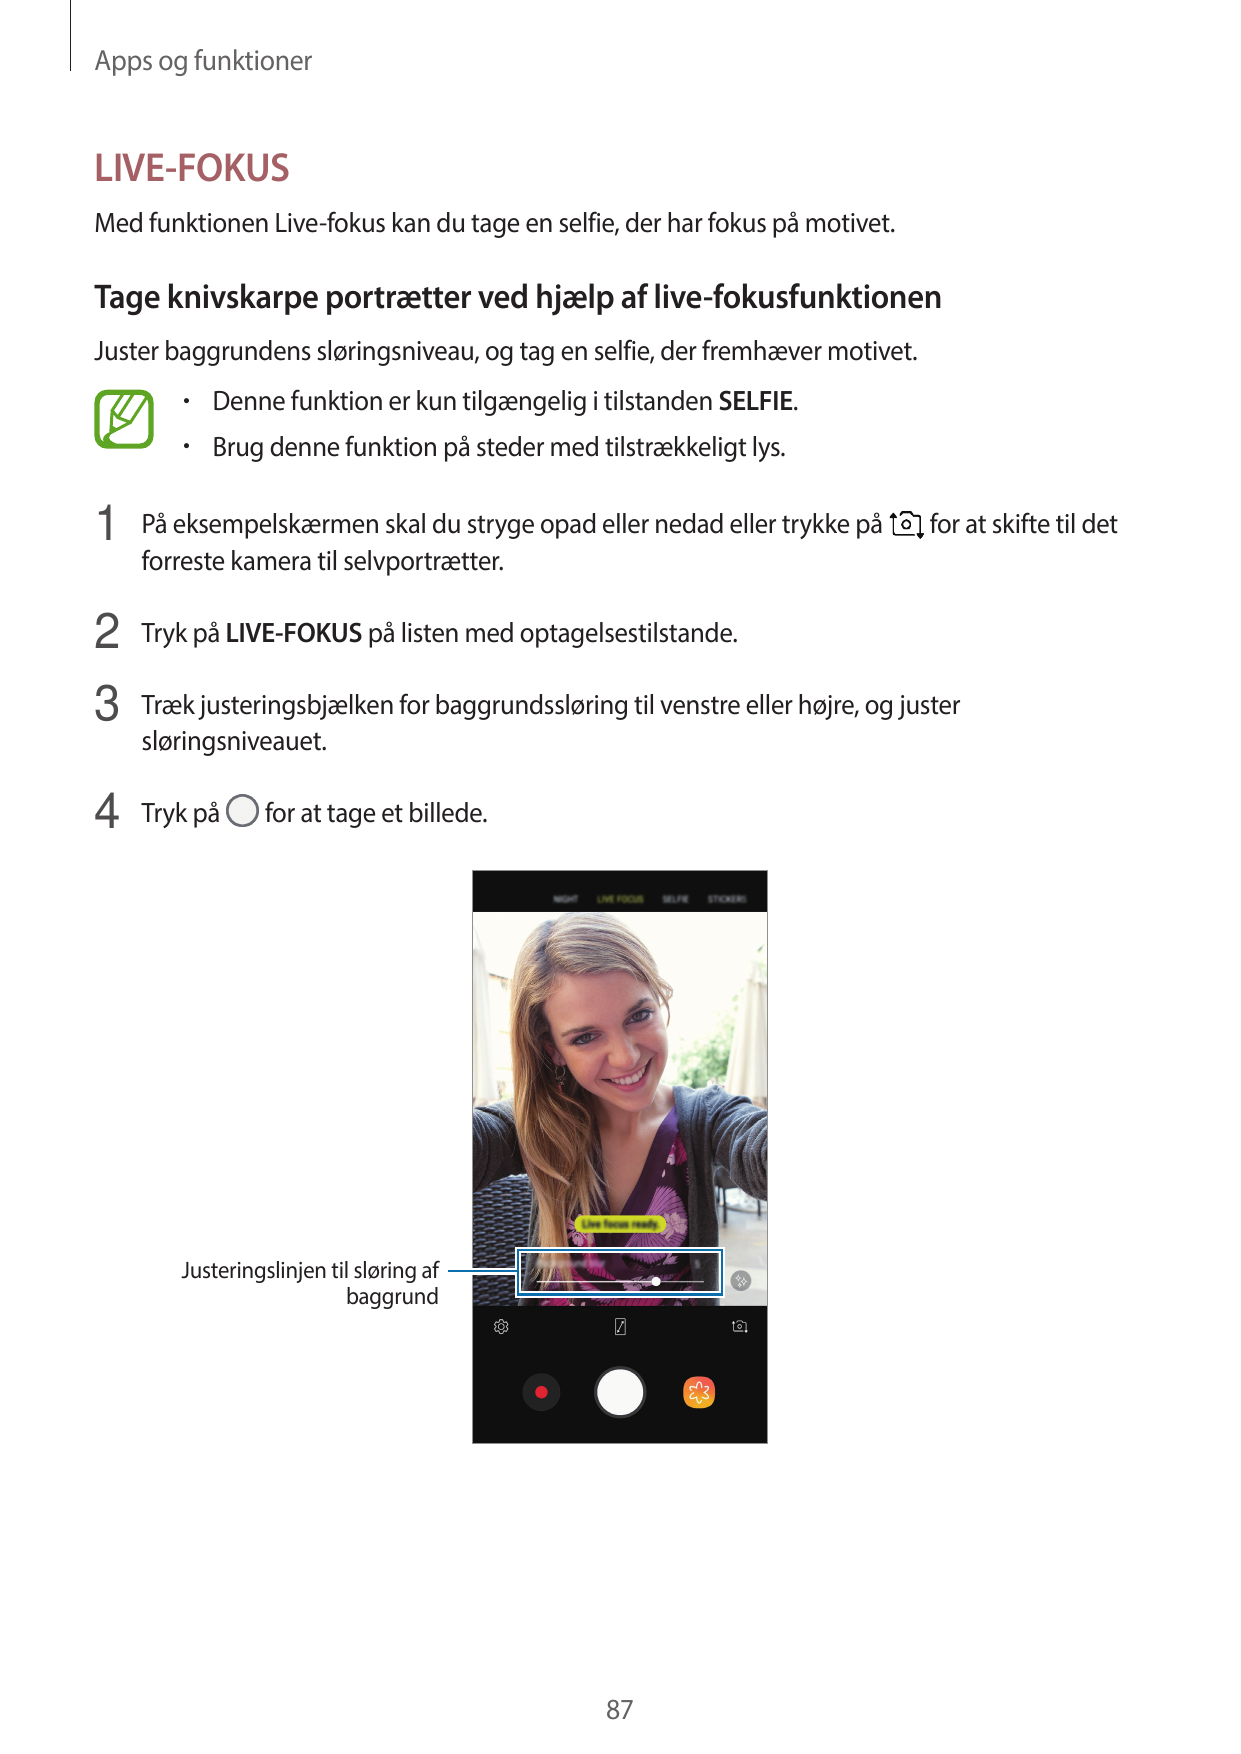 Apps og funktionerLIVE-FOKUSMed funktionen Live-fokus kan du tage en selfie, der har fokus på motivet.Tage knivskarpe portrætter